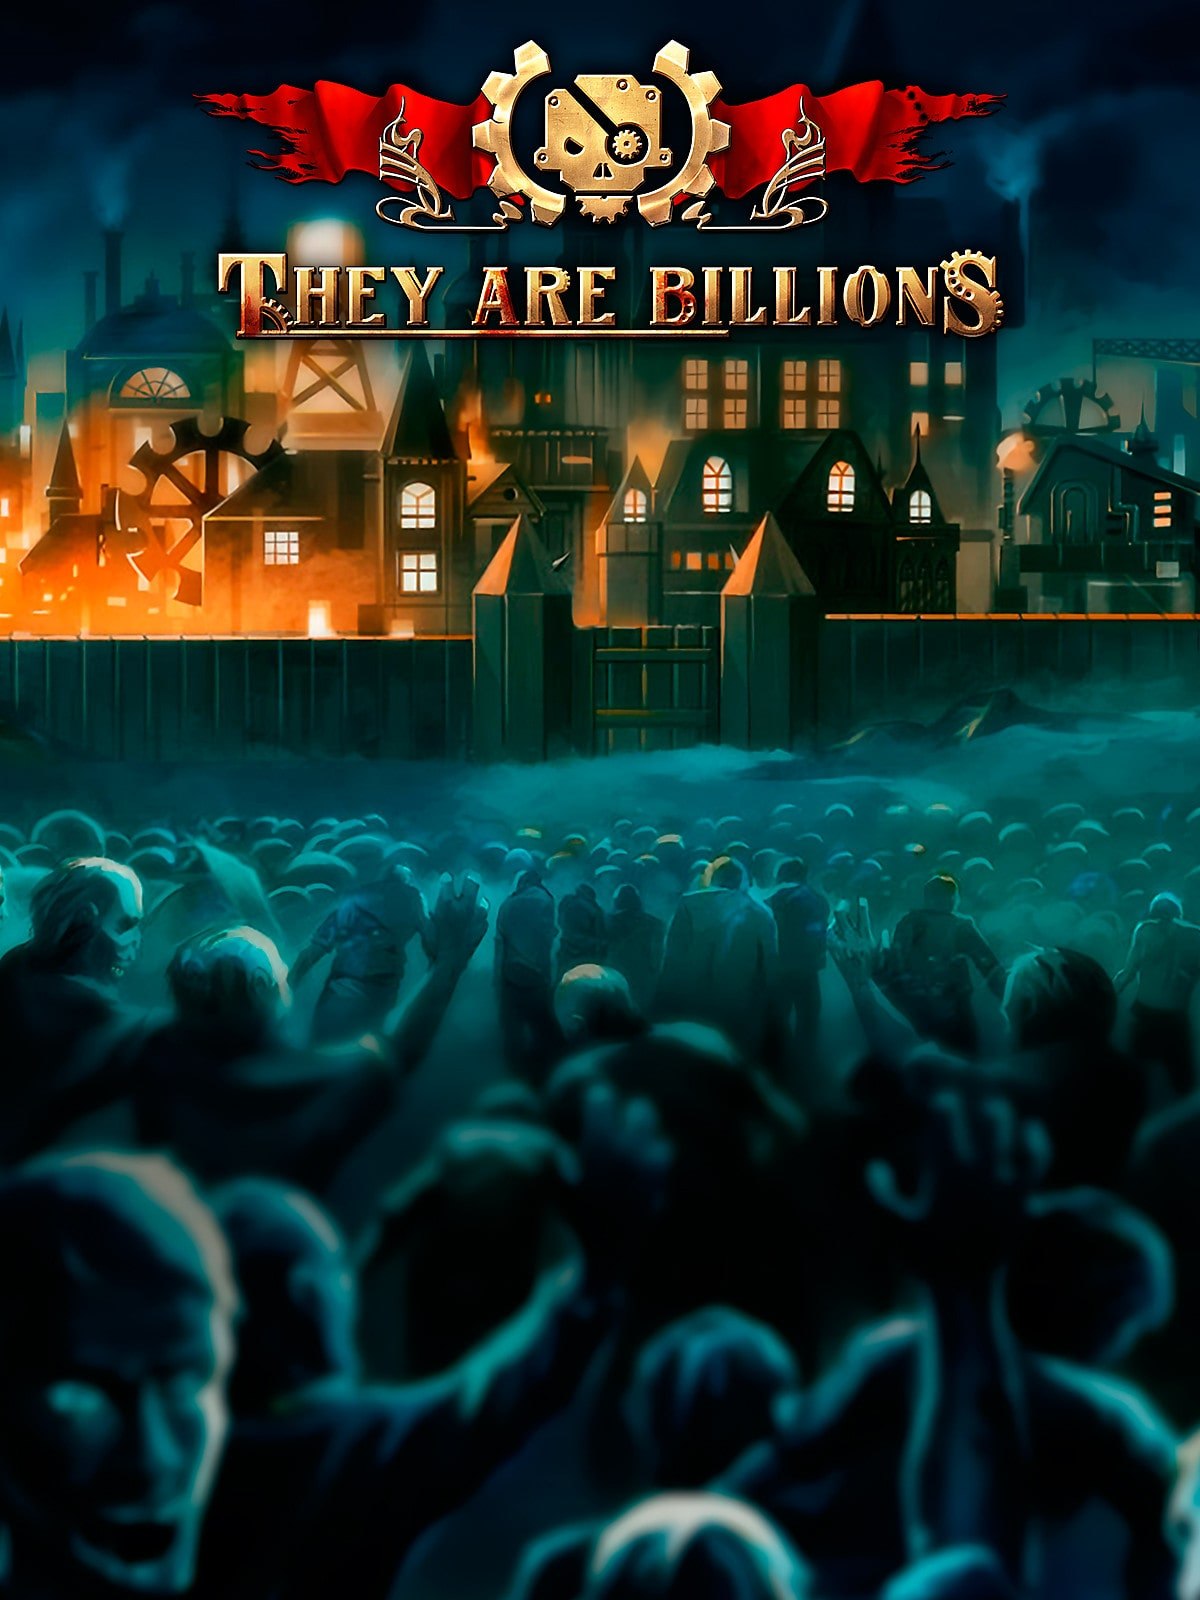 سی دی کی اریجینال استیم بازی They Are Billions